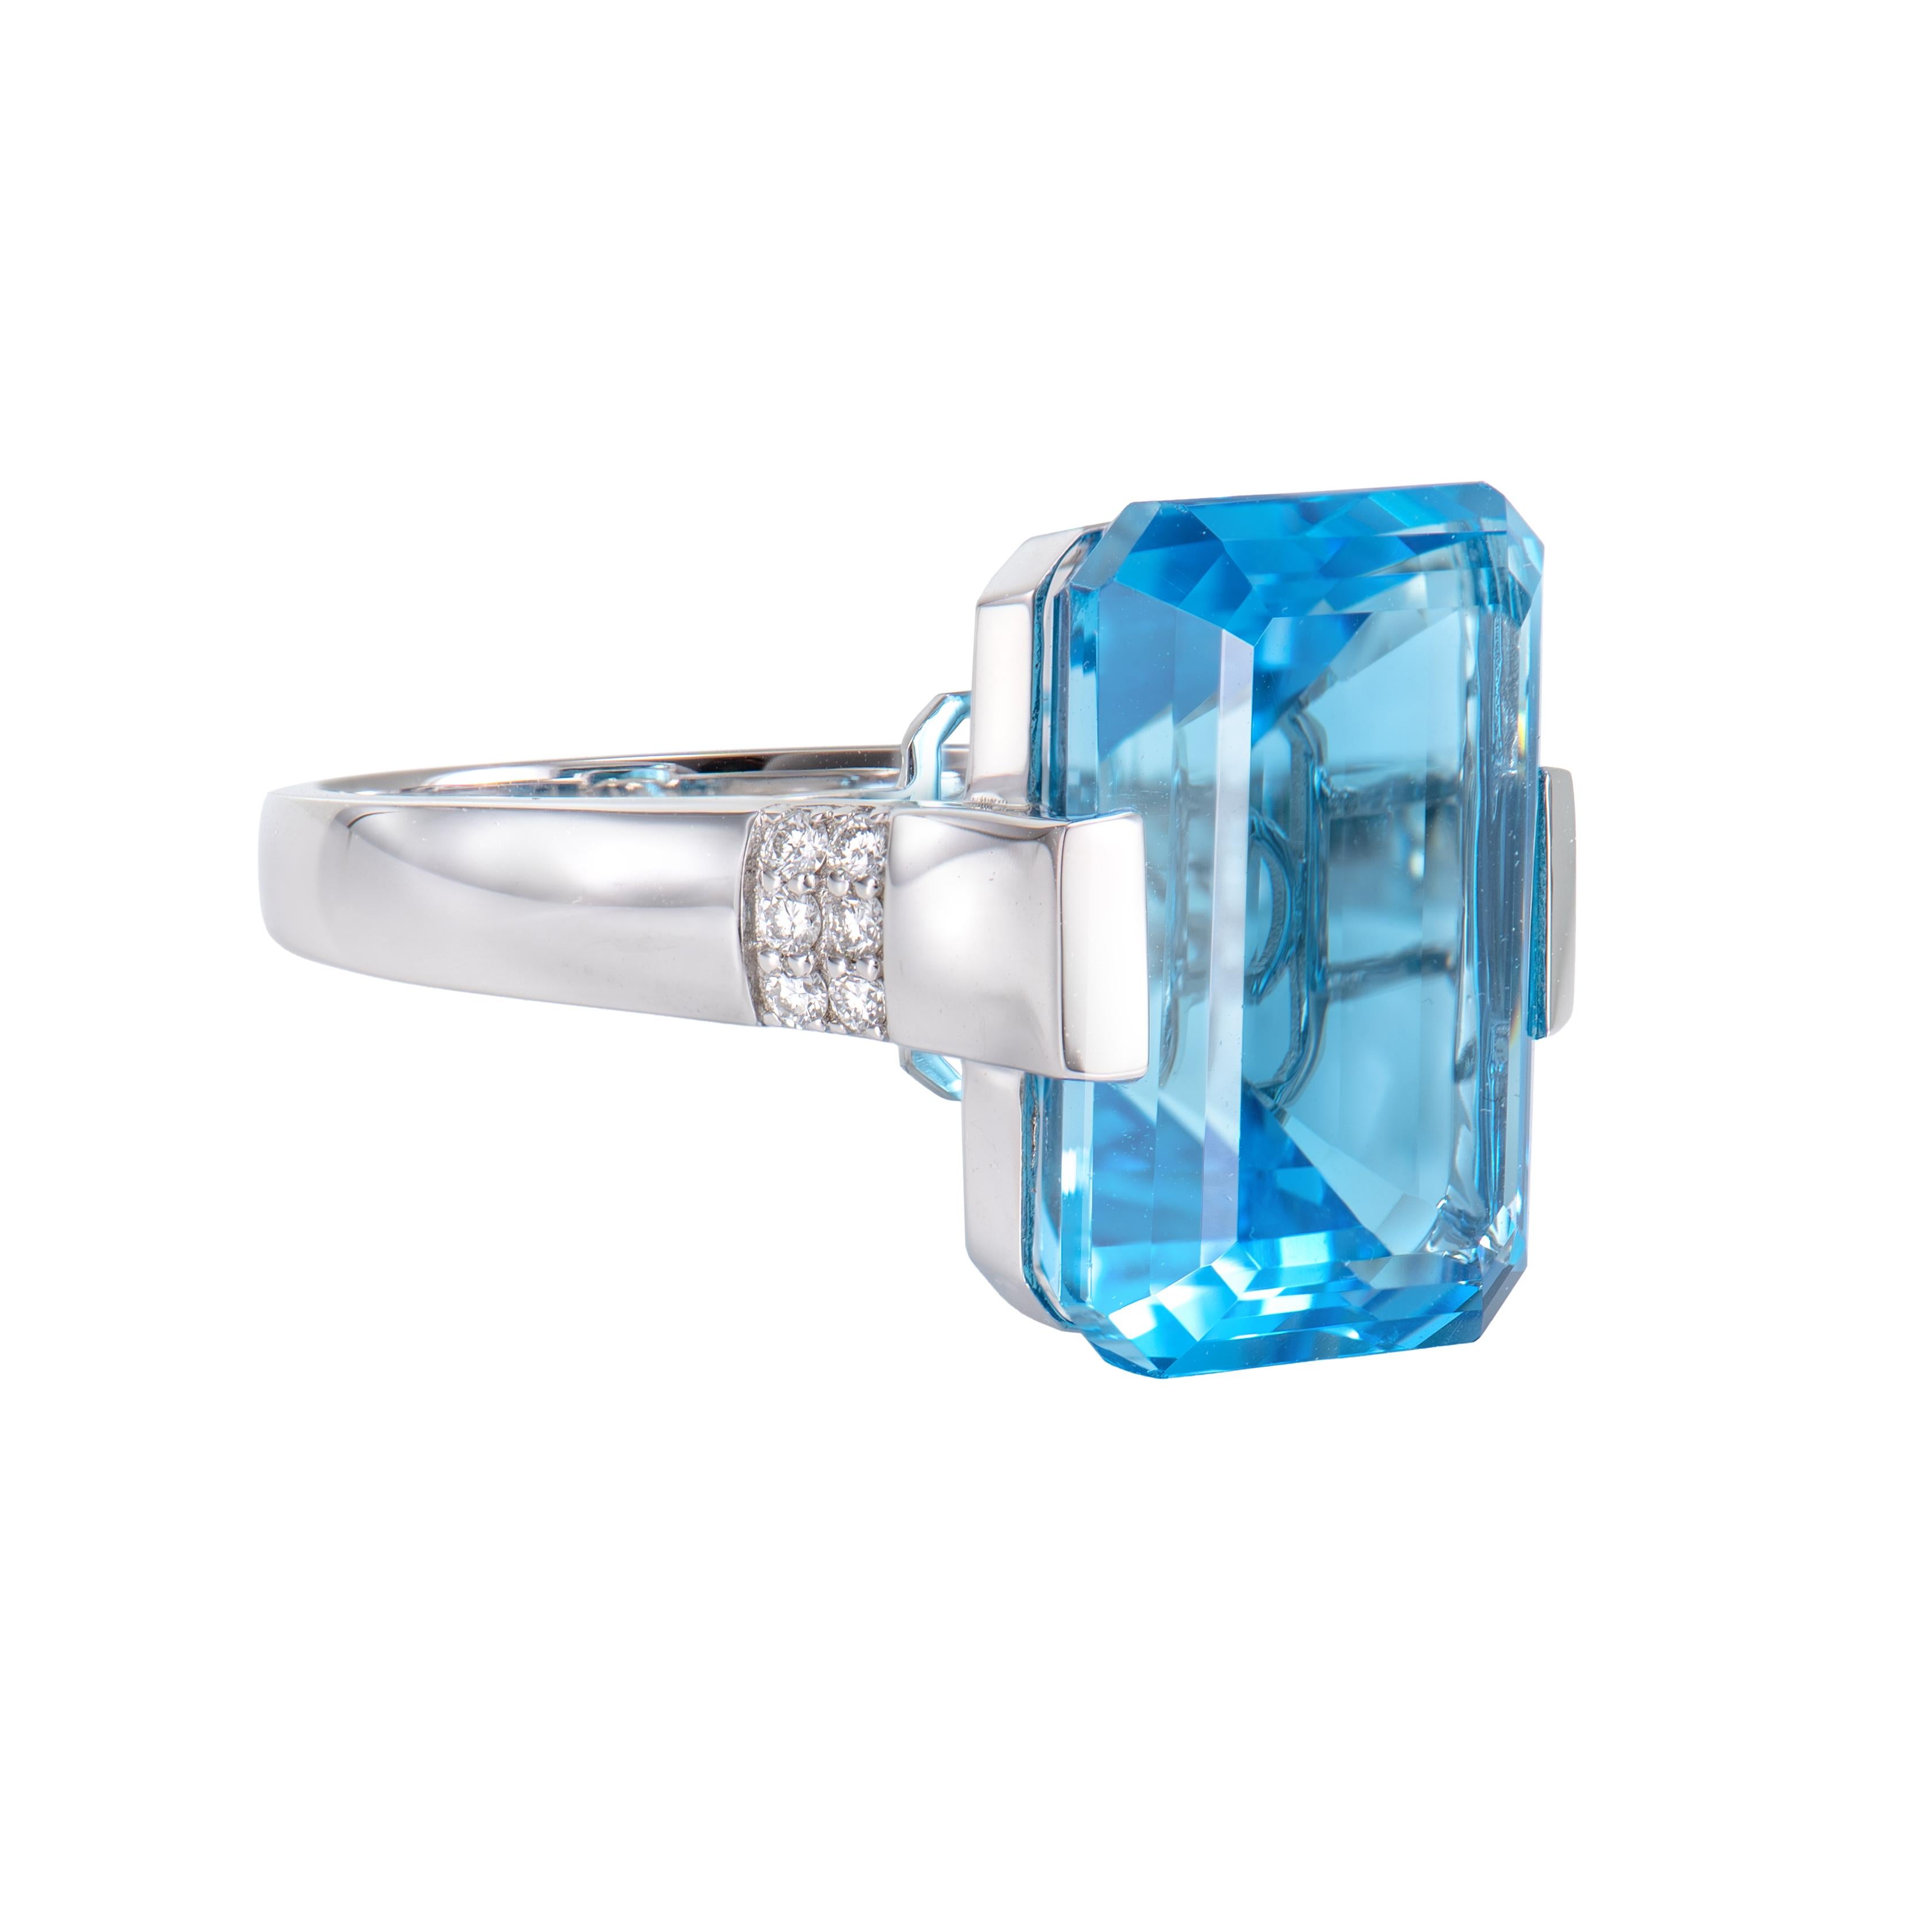 Es ist ein ausgefallener Schweizer Blautopas Ring in einer achteckigen Form mit blauem Farbton. Der Ring ist elegant und kann zu vielen Anlässen getragen werden. Er ist nützlich, um Ihre Gefühle zu ordnen und hilft, Ihre negativen Gefühle zu